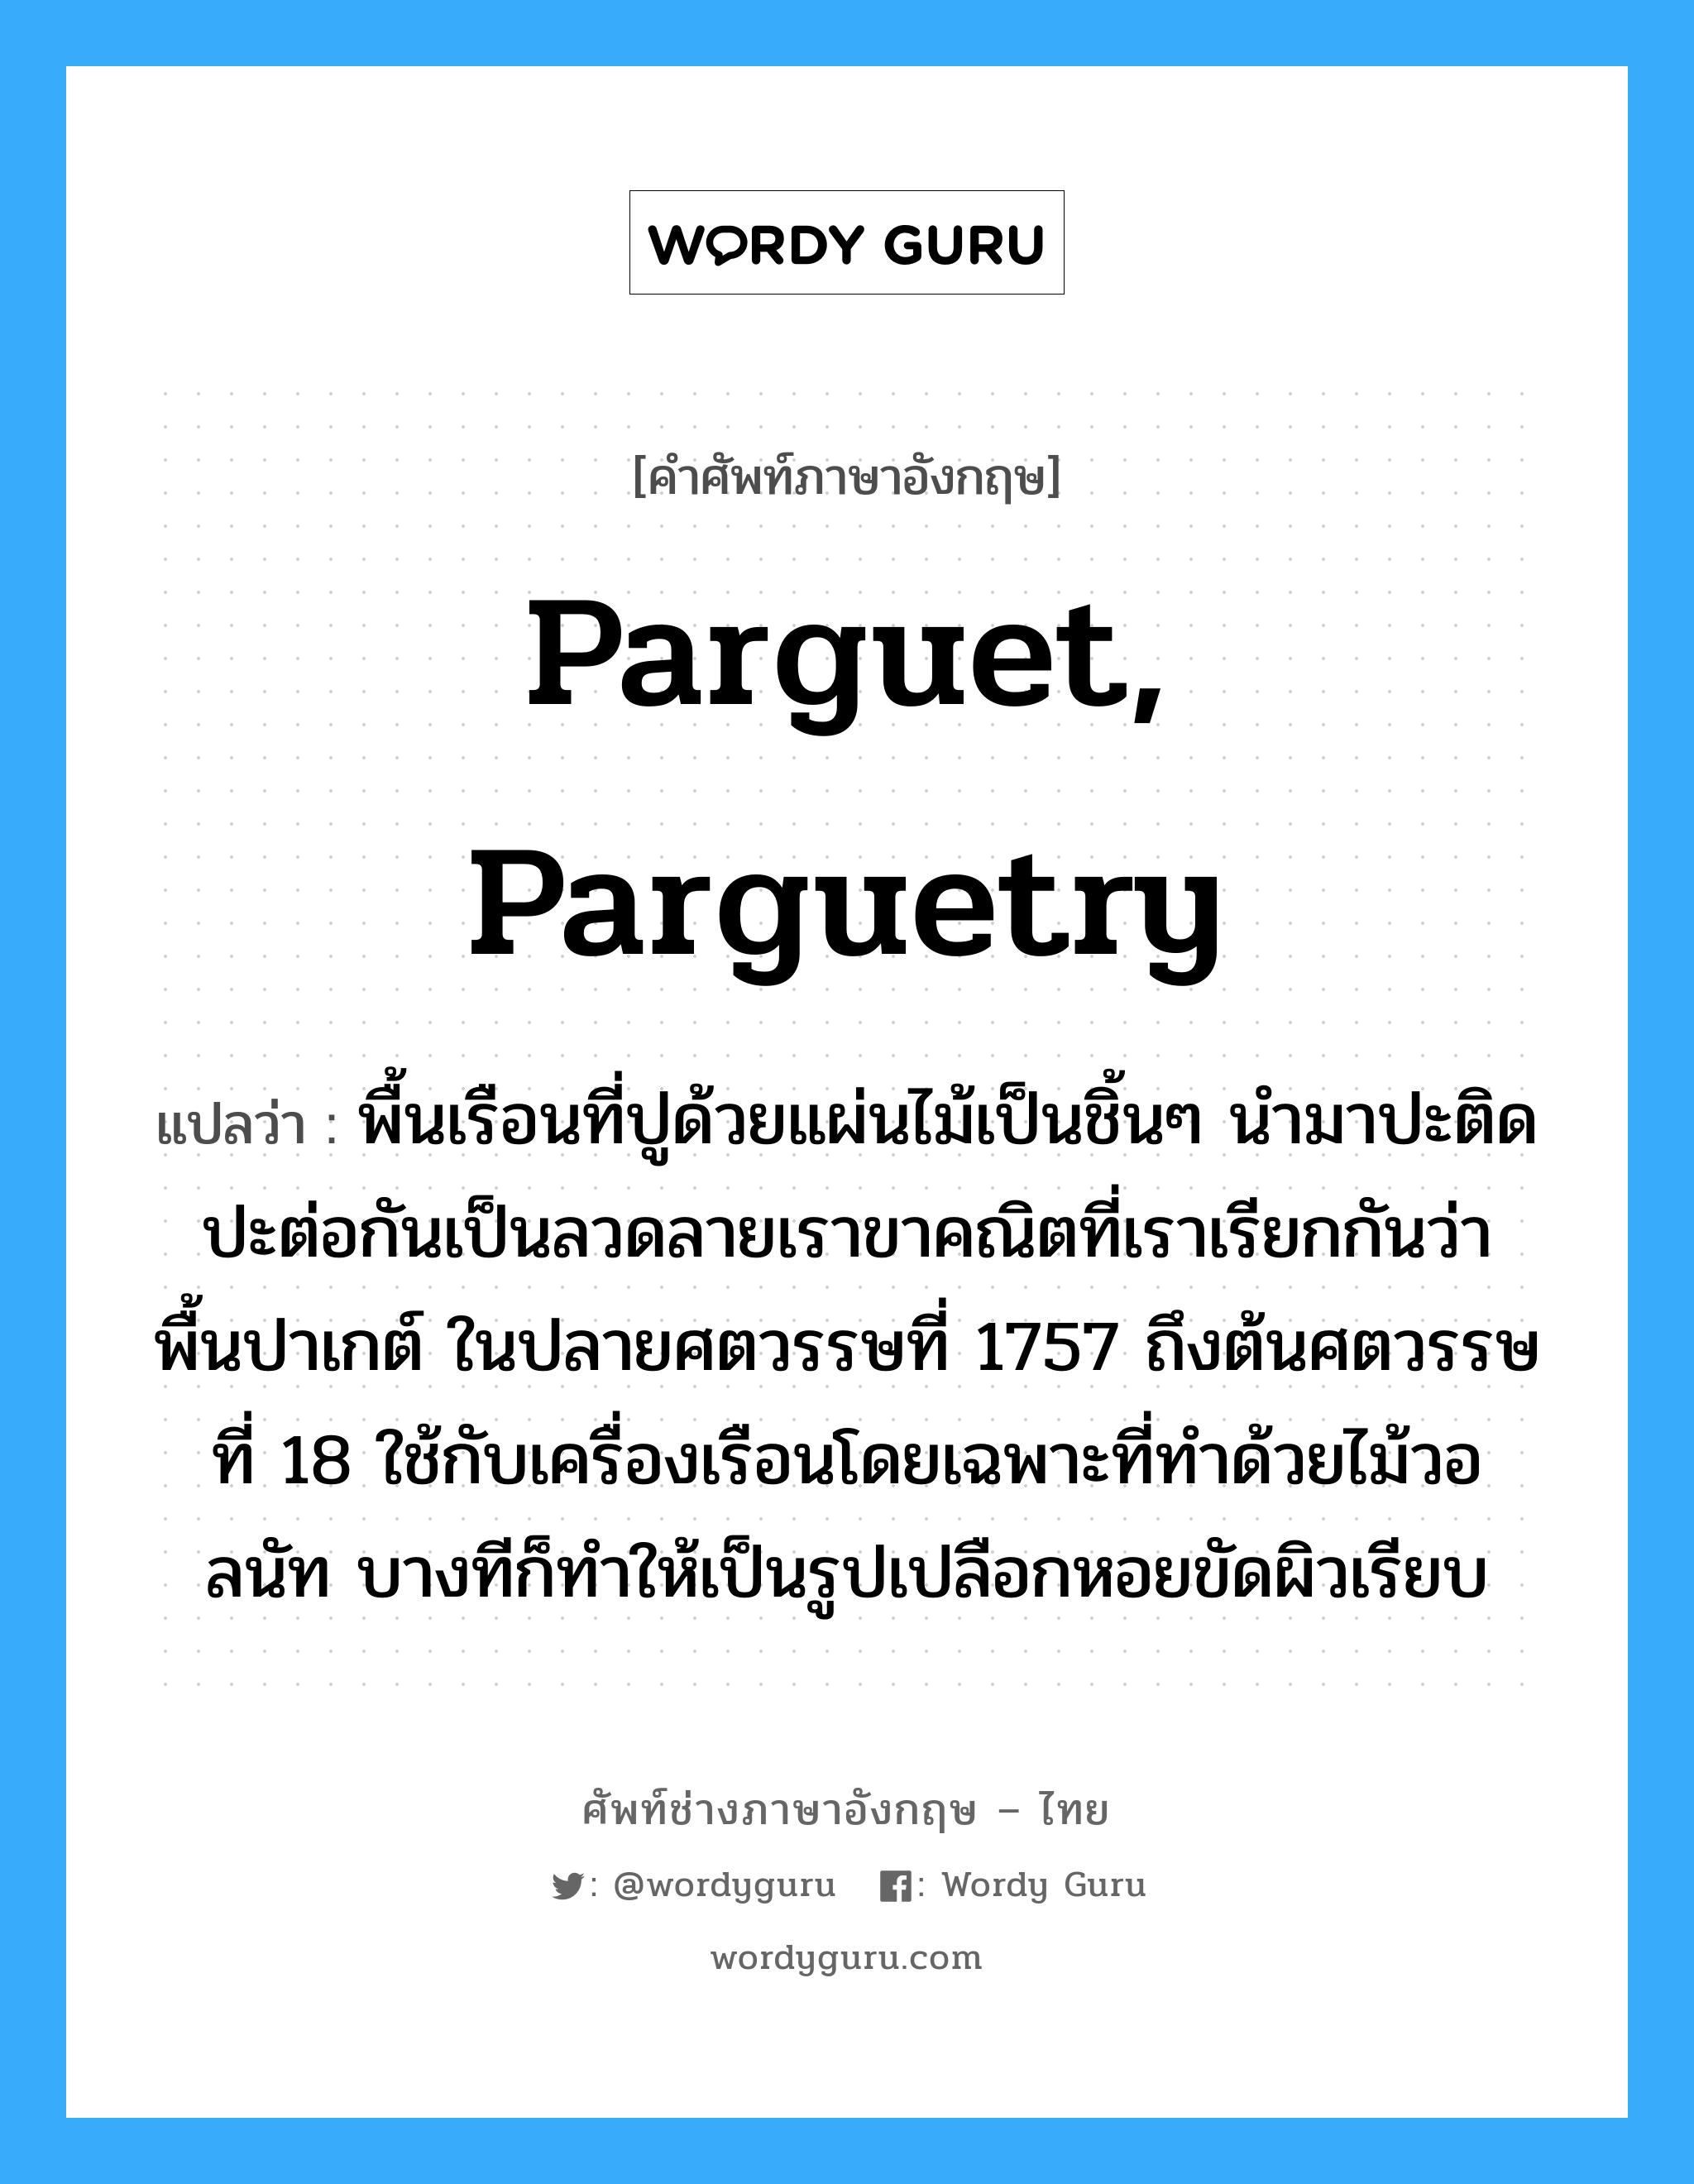 parguet, parguetry แปลว่า?, คำศัพท์ช่างภาษาอังกฤษ - ไทย parguet, parguetry คำศัพท์ภาษาอังกฤษ parguet, parguetry แปลว่า พื้นเรือนที่ปูด้วยแผ่นไม้เป็นชิ้นๆ นำมาปะติดปะต่อกันเป็นลวดลายเราขาคณิตที่เราเรียกกันว่า พื้นปาเกต์ ในปลายศตวรรษที่ 1757 ถึงต้นศตวรรษที่ 18 ใช้กับเครื่องเรือนโดยเฉพาะที่ทำด้วยไม้วอลนัท บางทีก็ทำให้เป็นรูปเปลือกหอยขัดผิวเรียบ